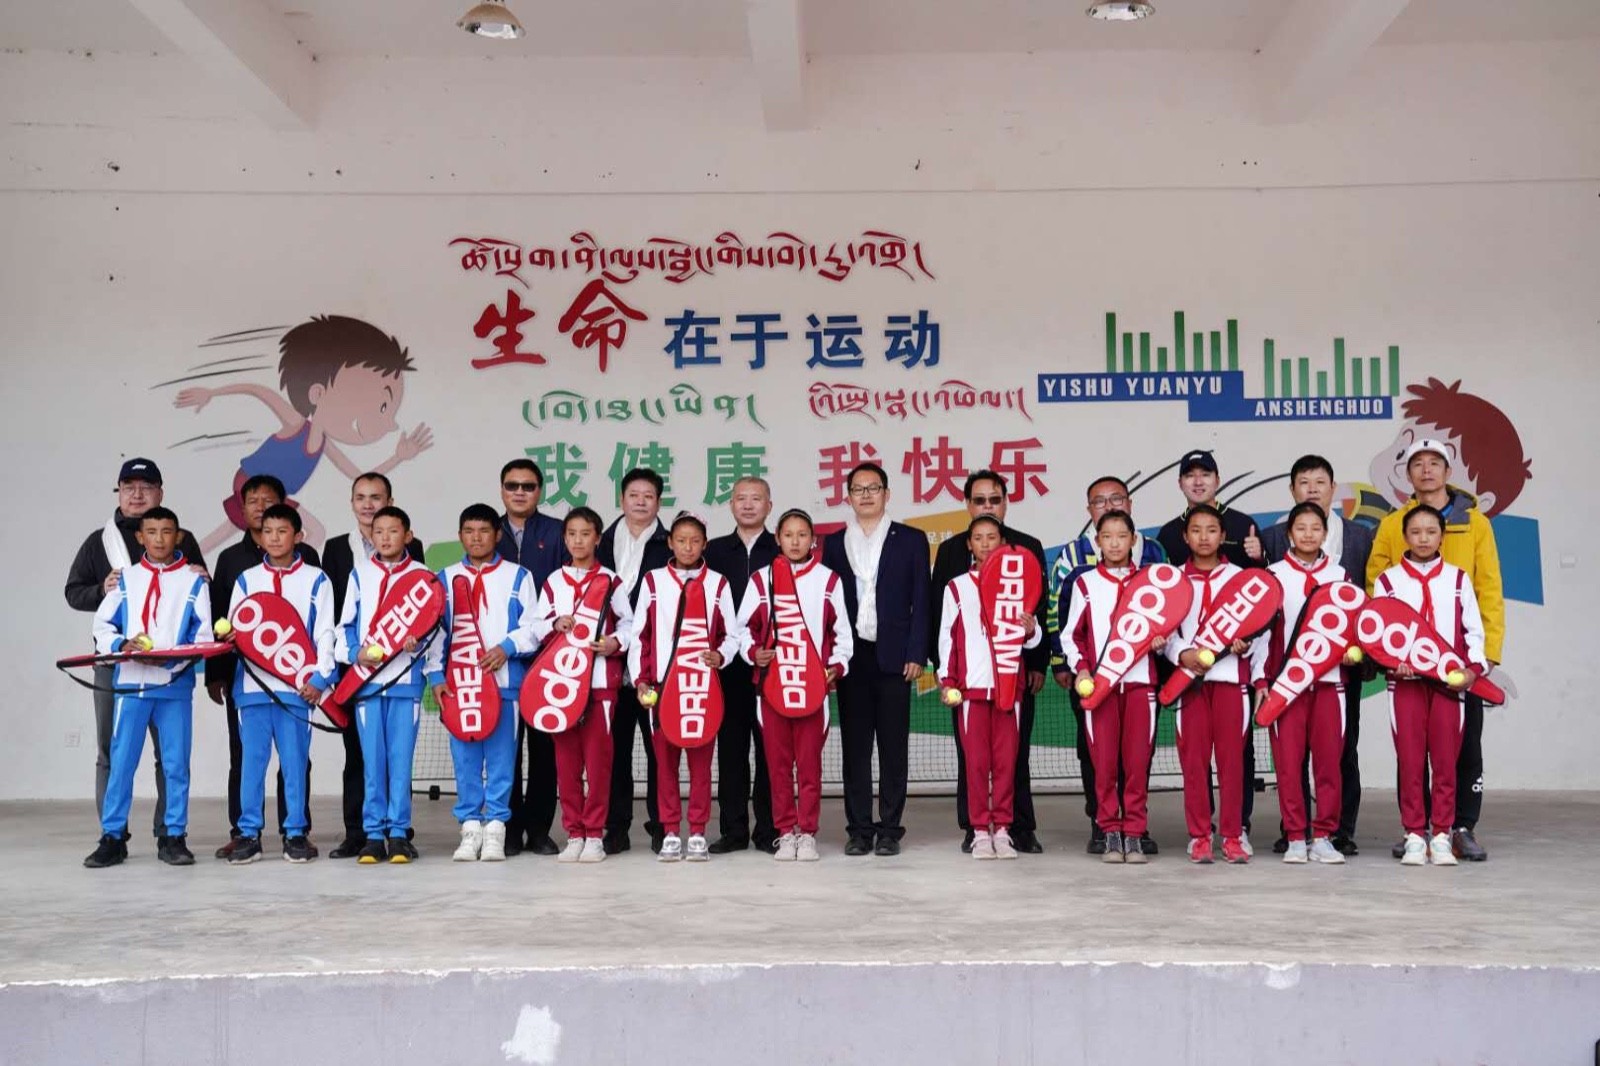 中网西藏公益行再迈新高度 桑珠孜区第三小学首次感受网球魅力